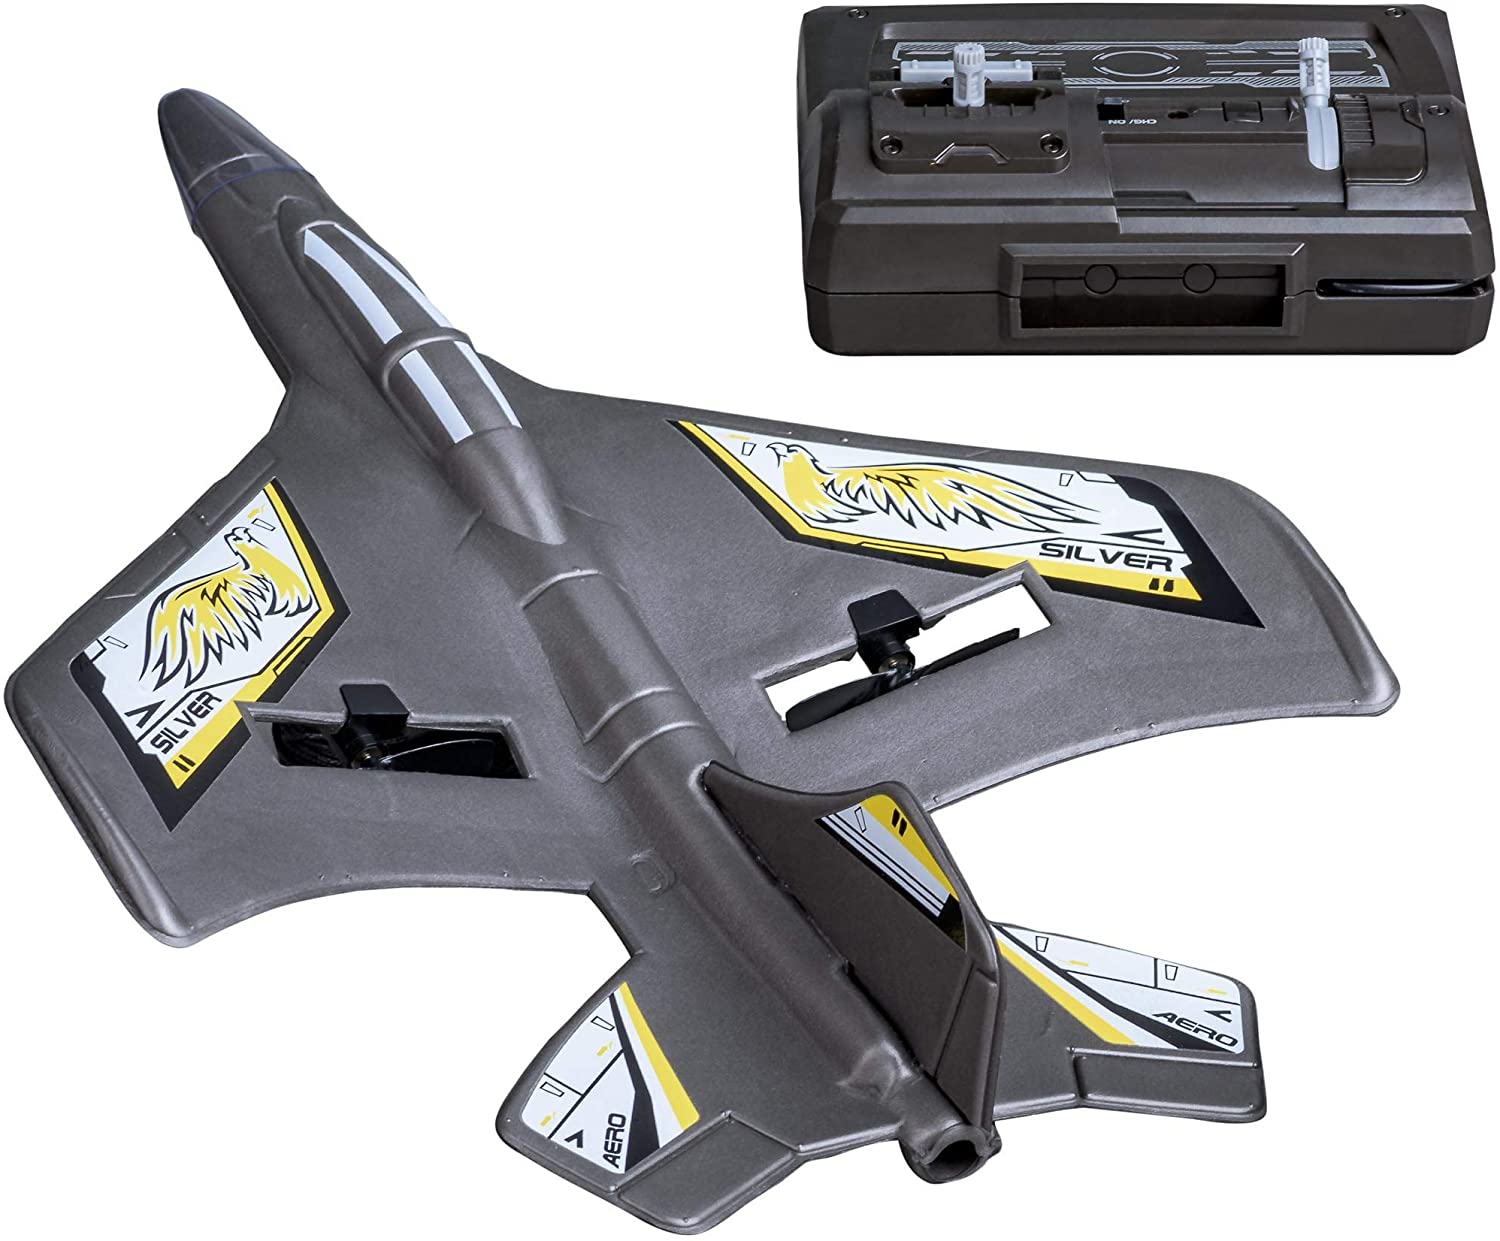 Jeux et Jouets - Silvertlit - Flybotic X-Twin Evo